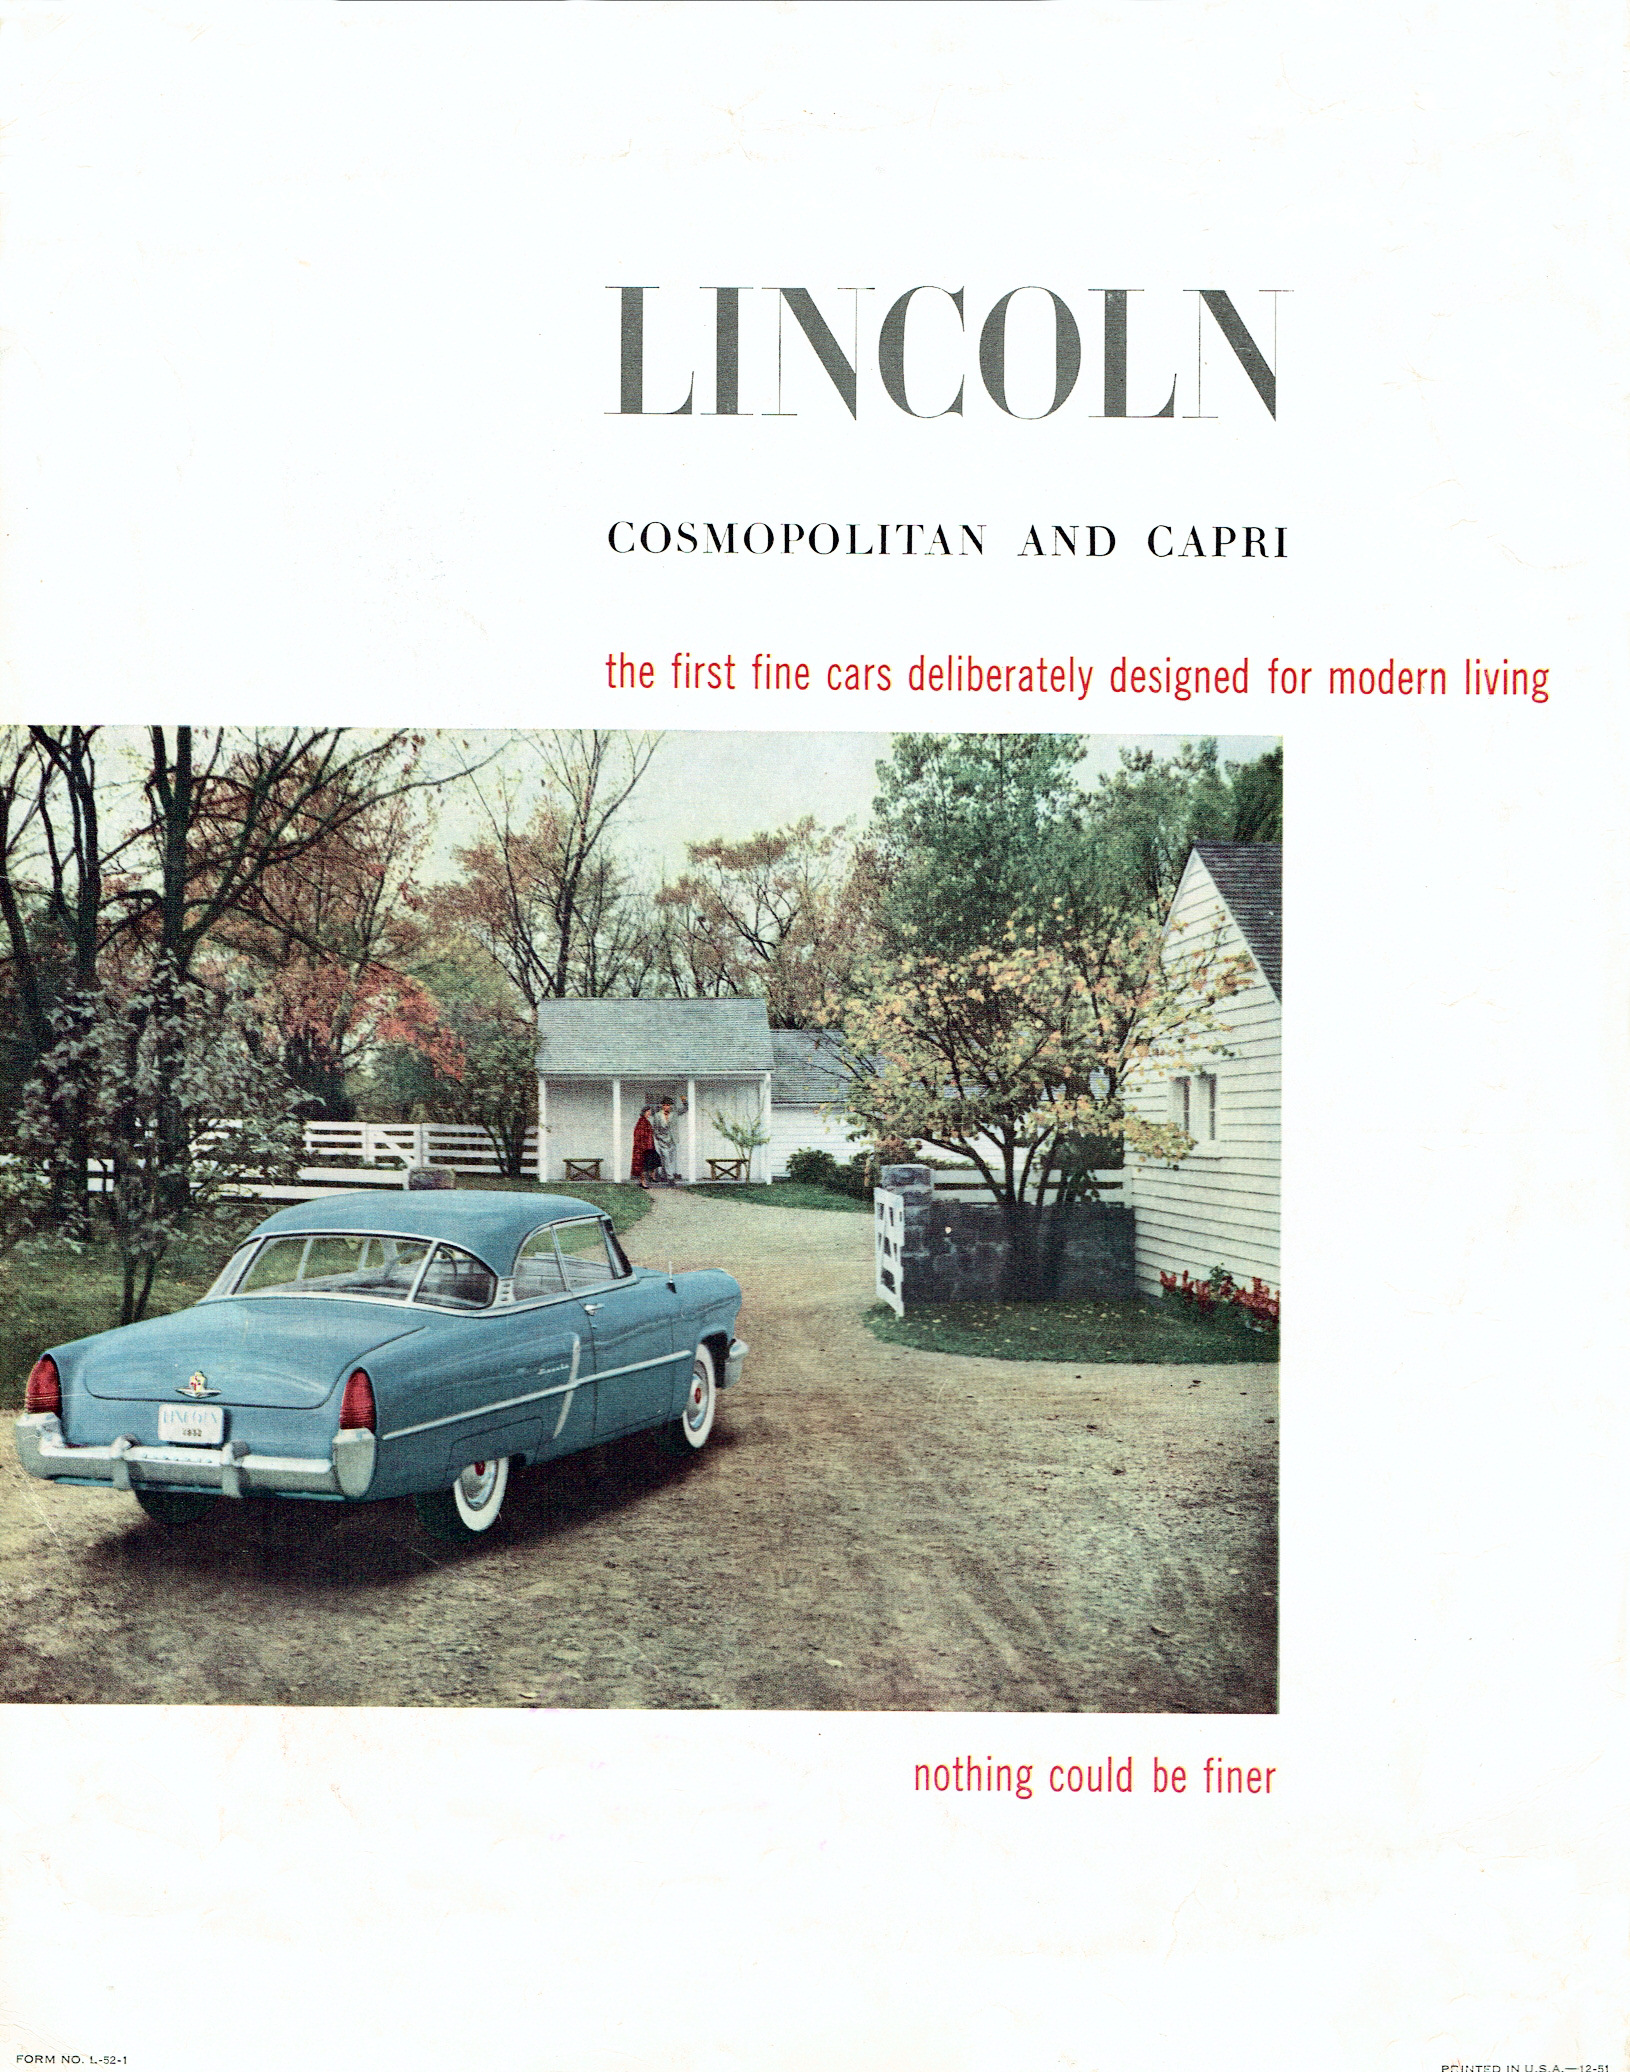 1952_Lincoln_Full_Line-20